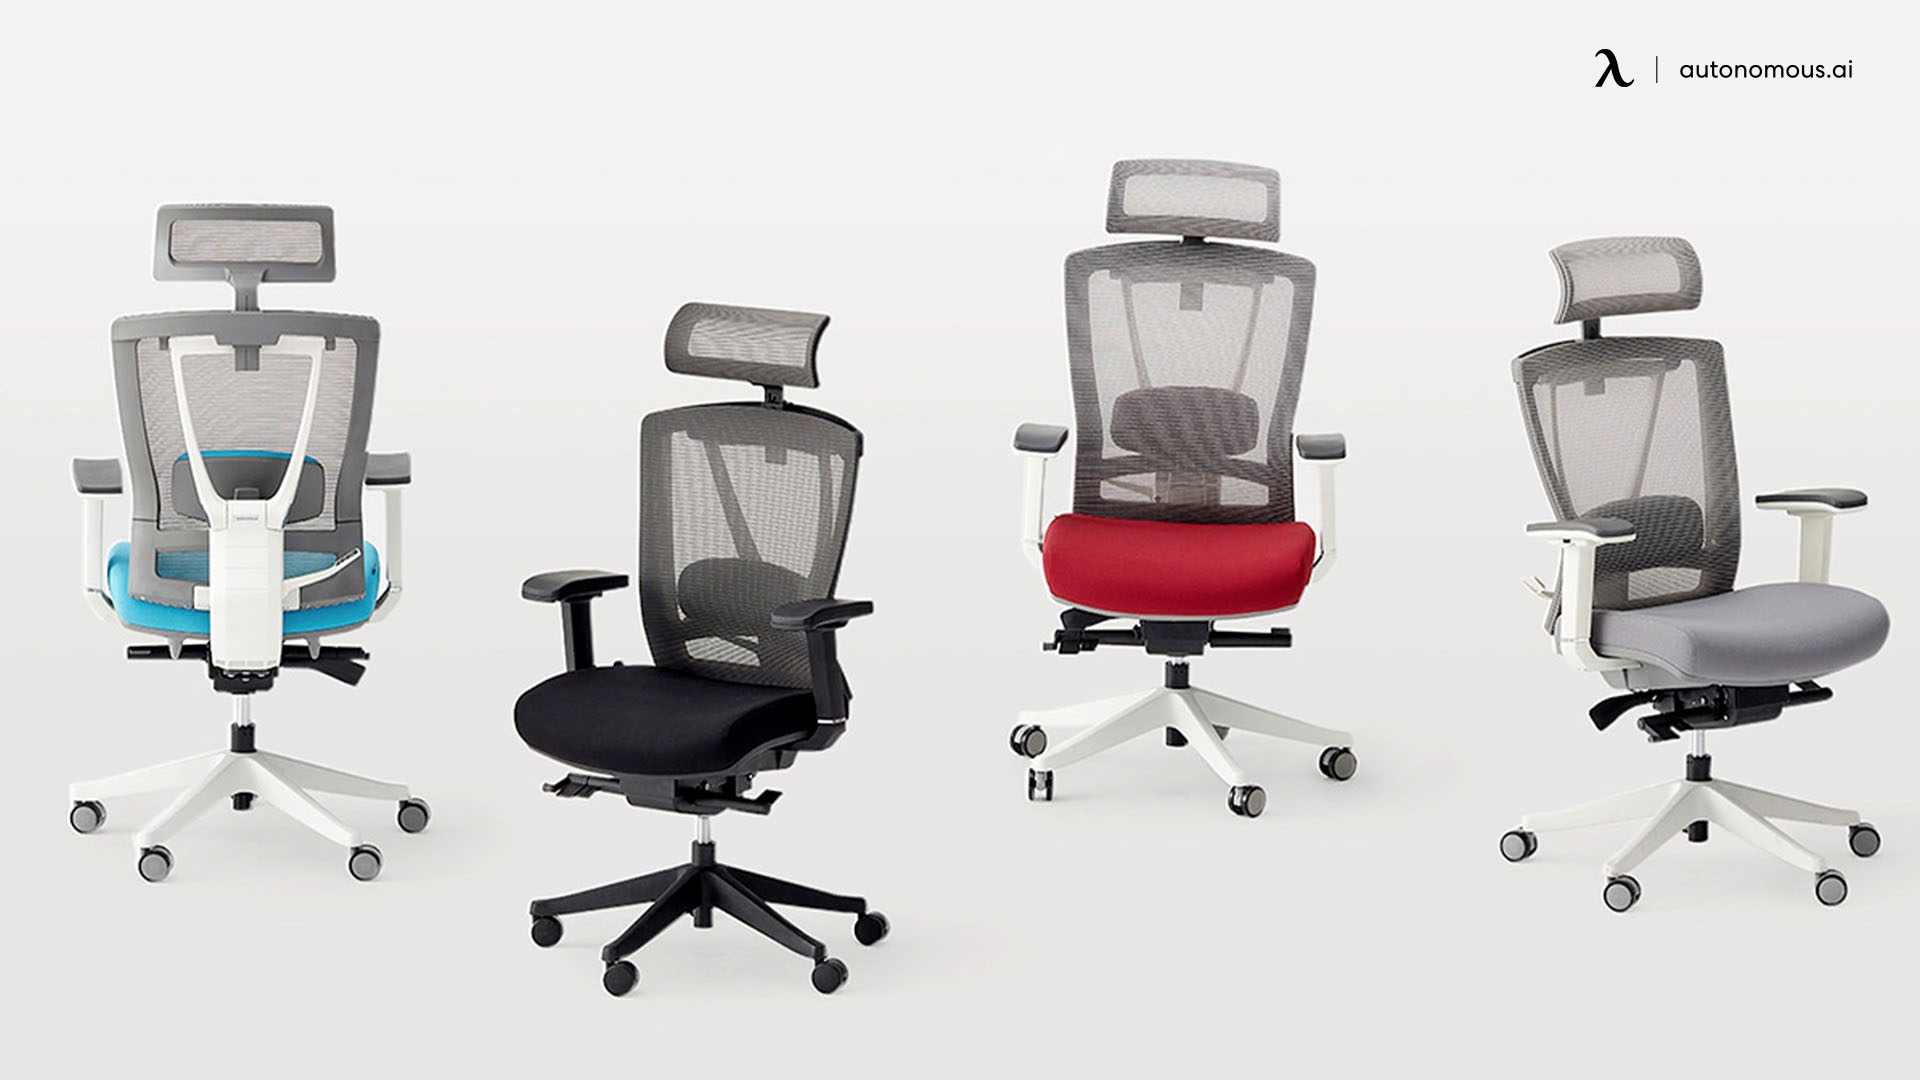 The ErgoChair Pro light gray office chair